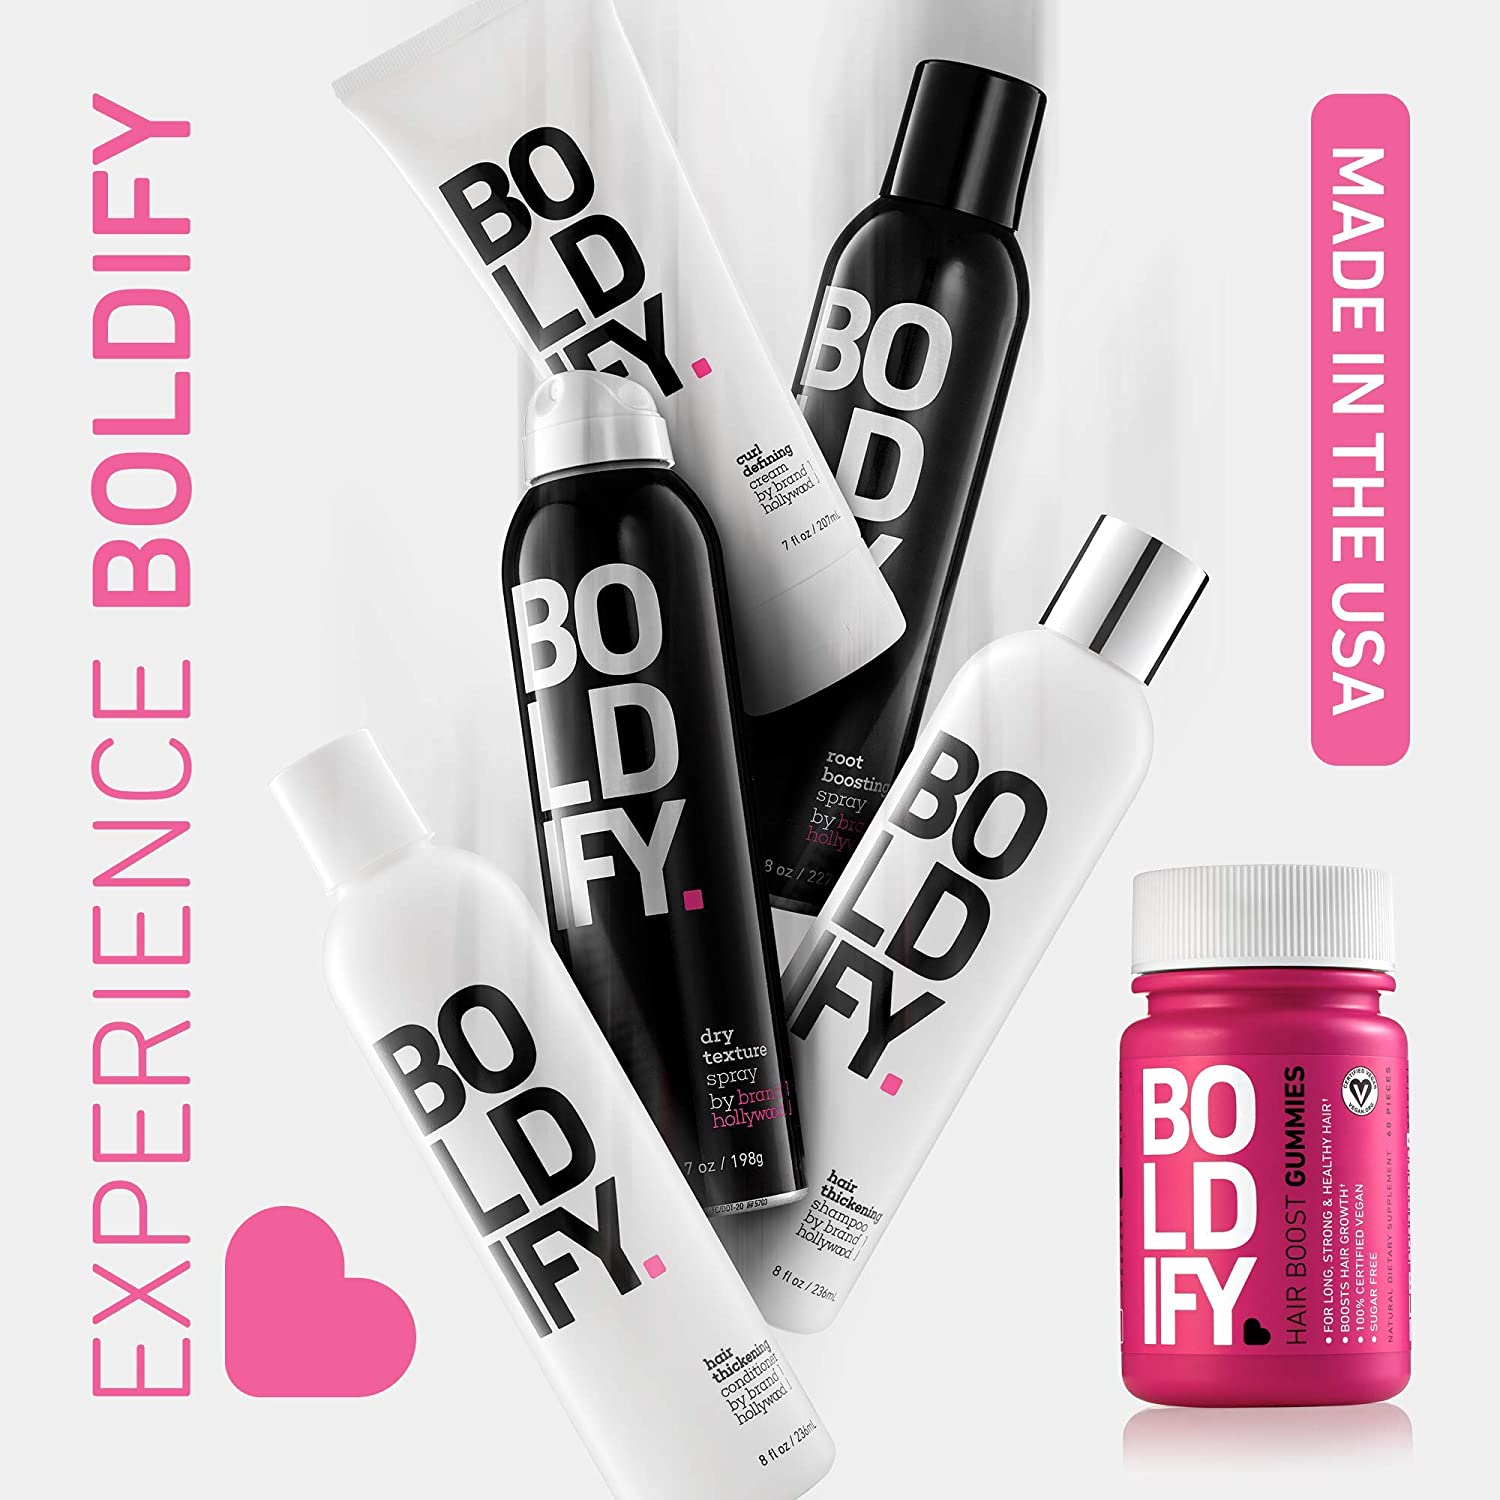 Boldify Hair Boost Gummies, Biotin Gummies for Hair Growth (5000 mcg), Sugar Free & Vegan, All Natural, Hair Vitamins - 30 Gummies - Fitaminat